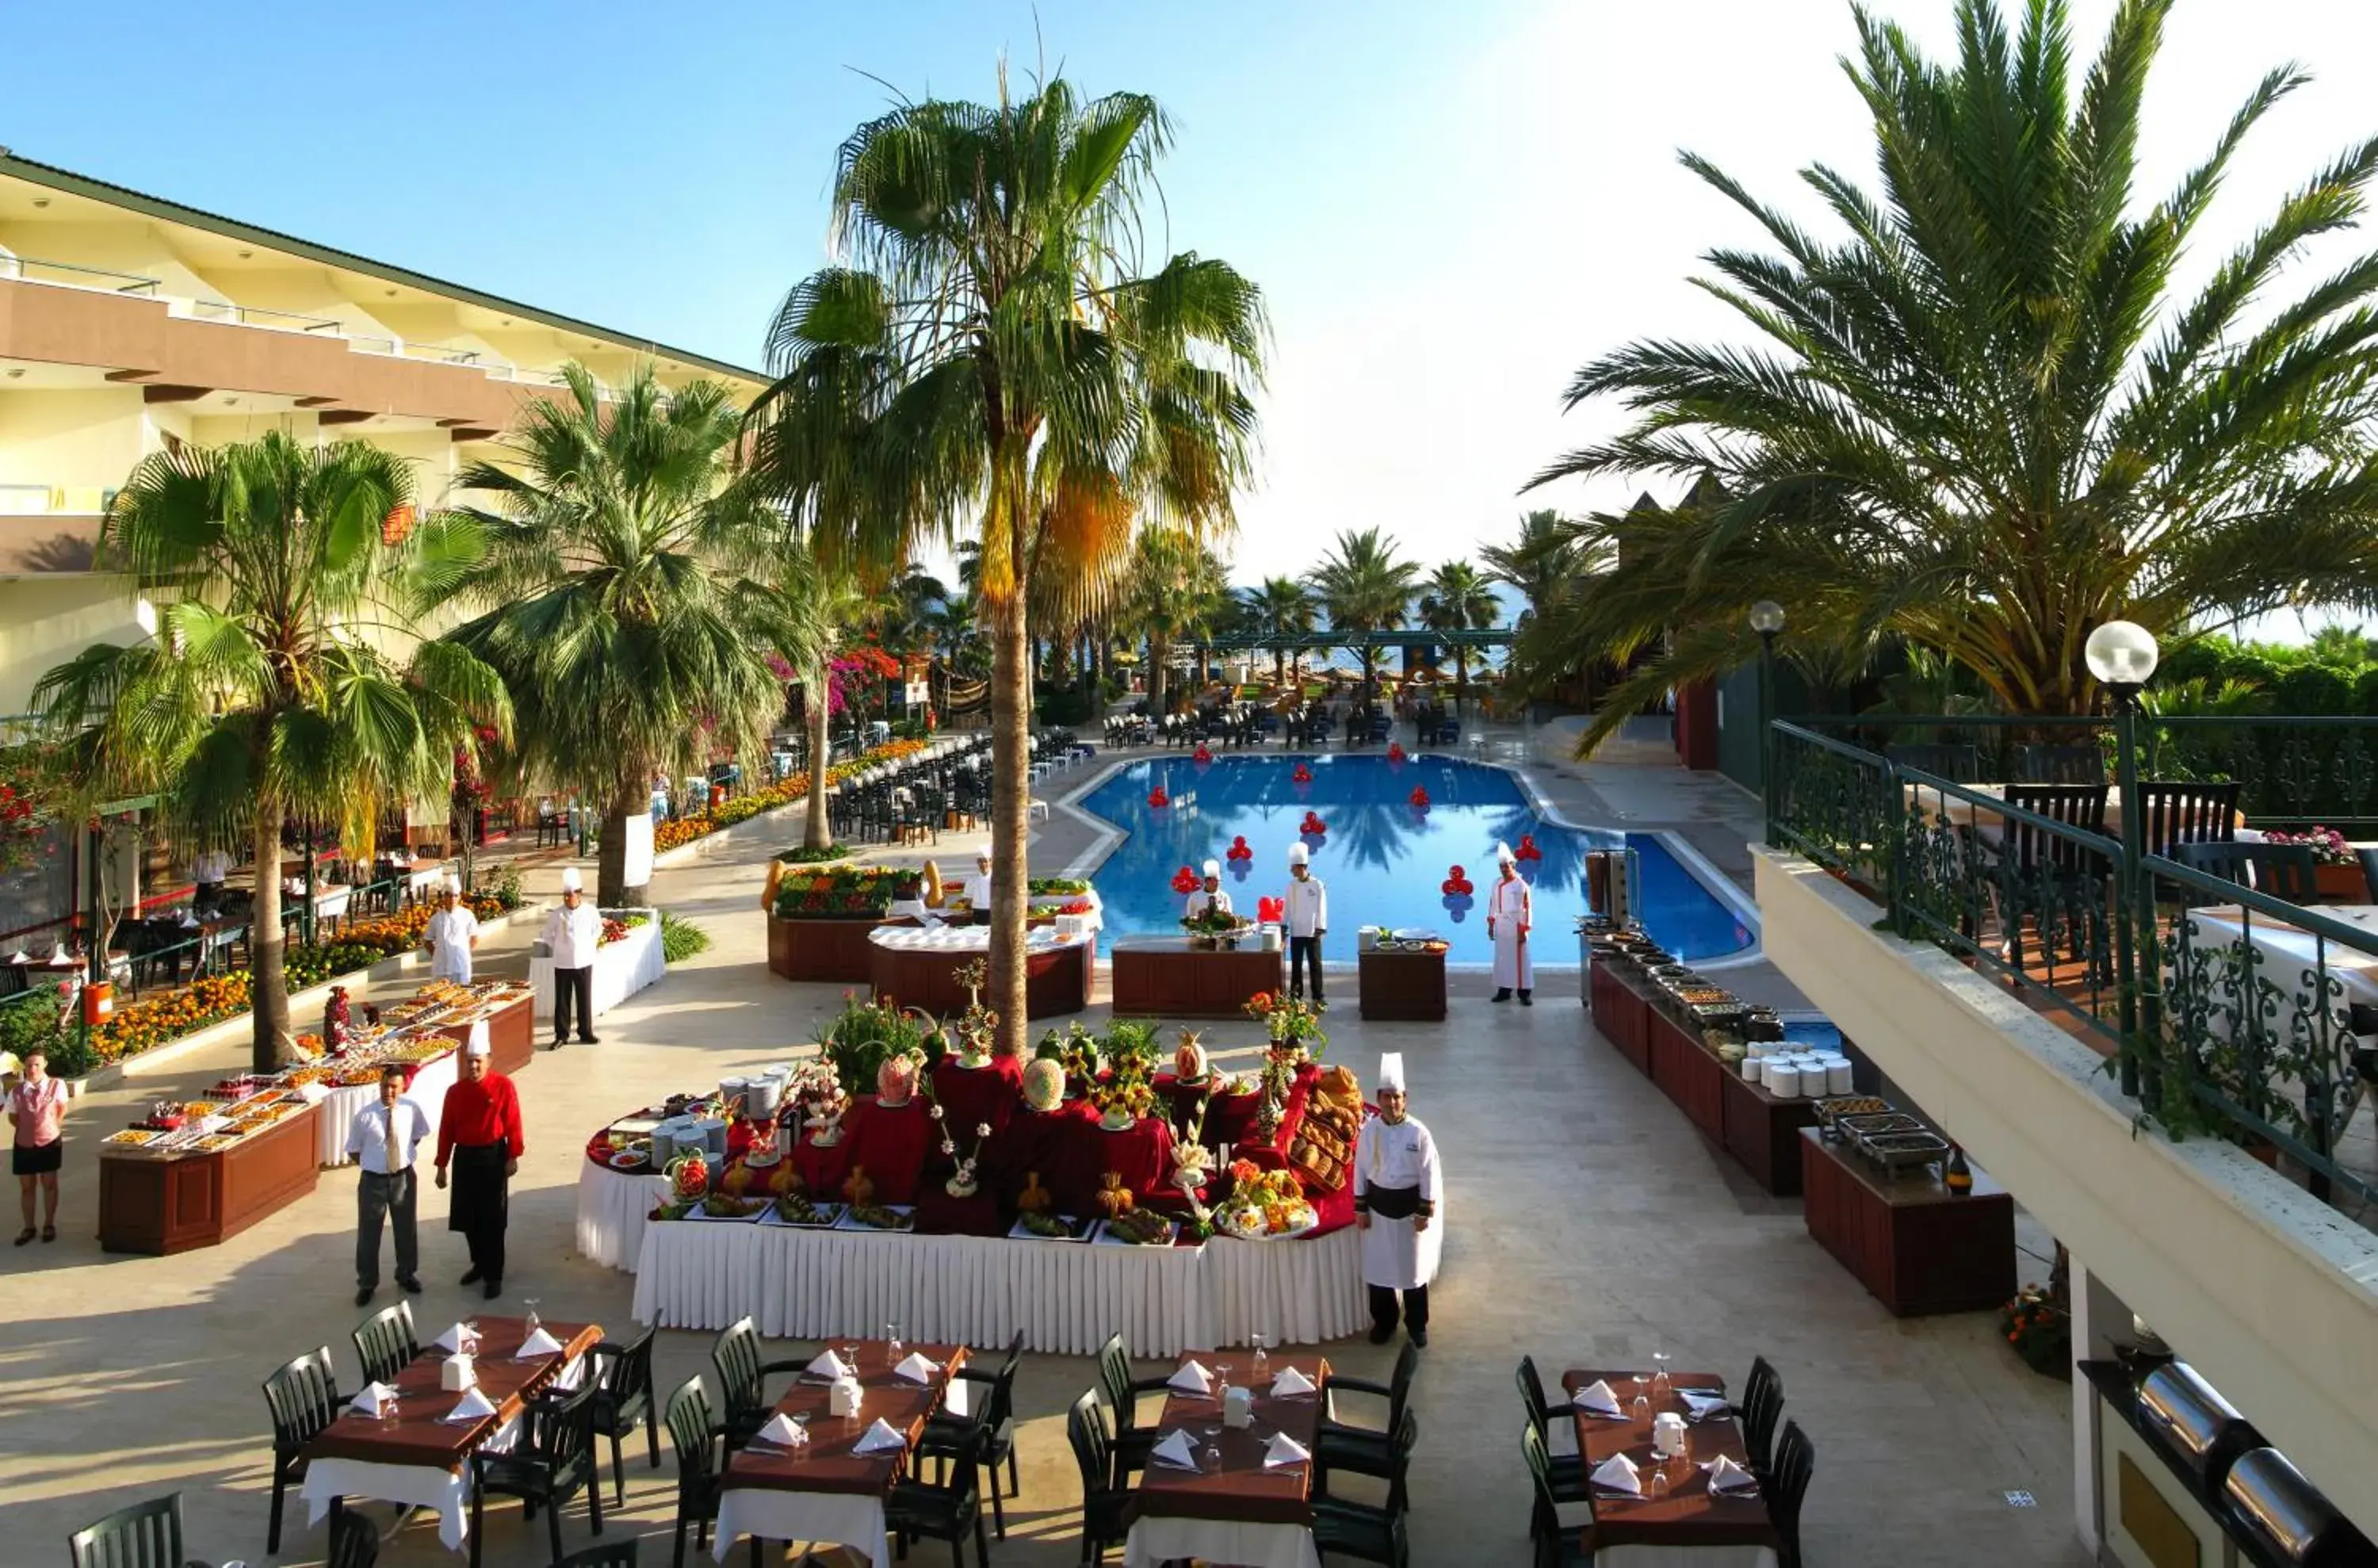 Swimming pool, Banquet Facilities in Galeri Resort Hotel